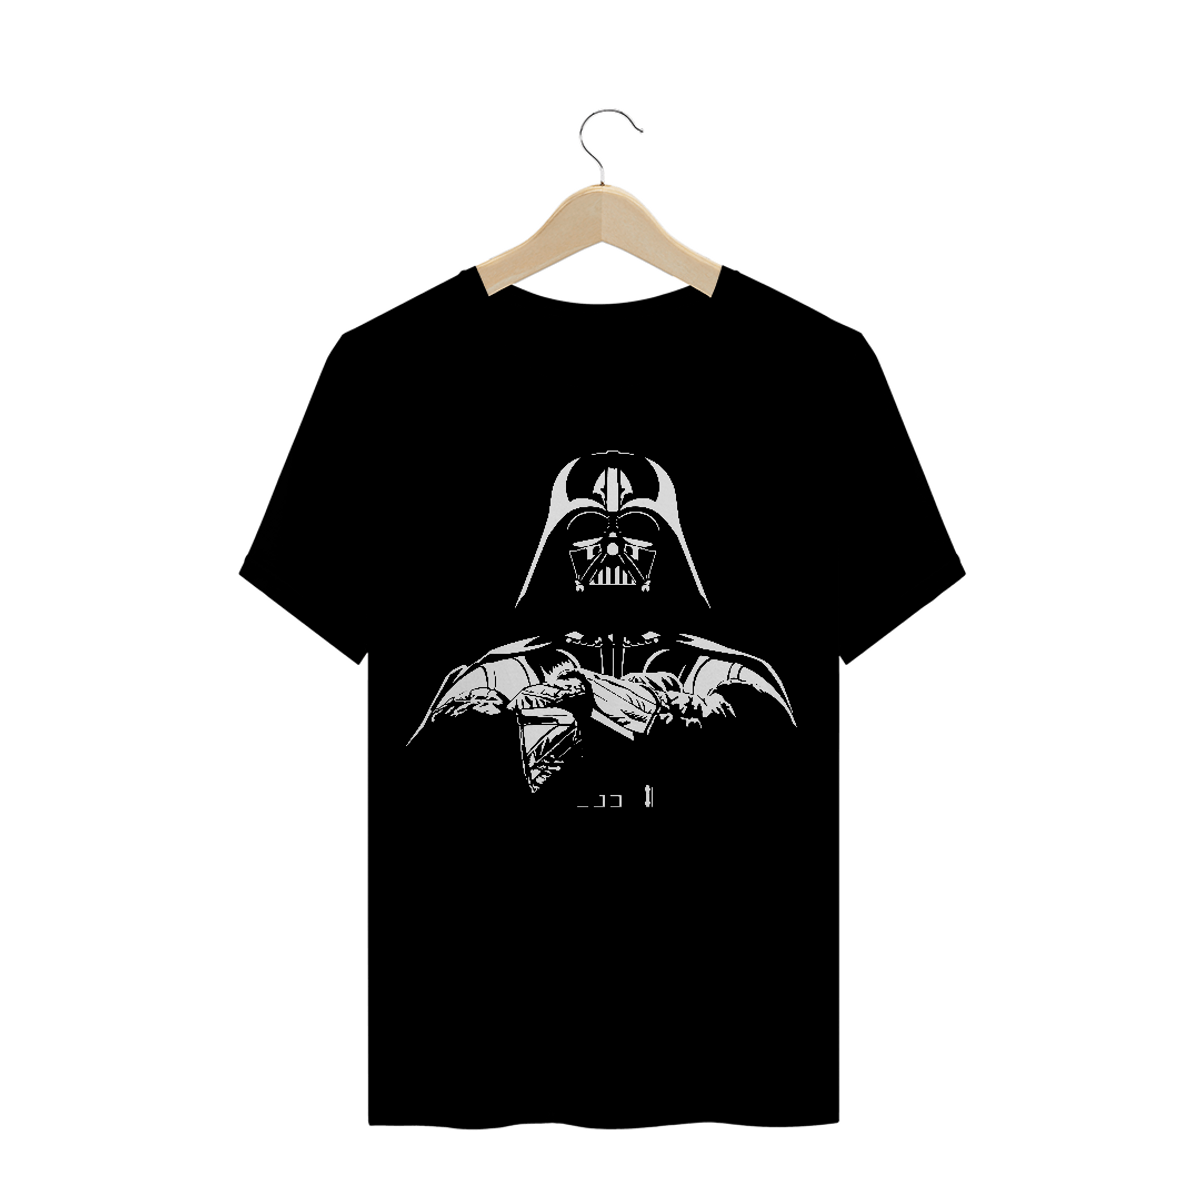 Nome do produto: Darth Vader 07